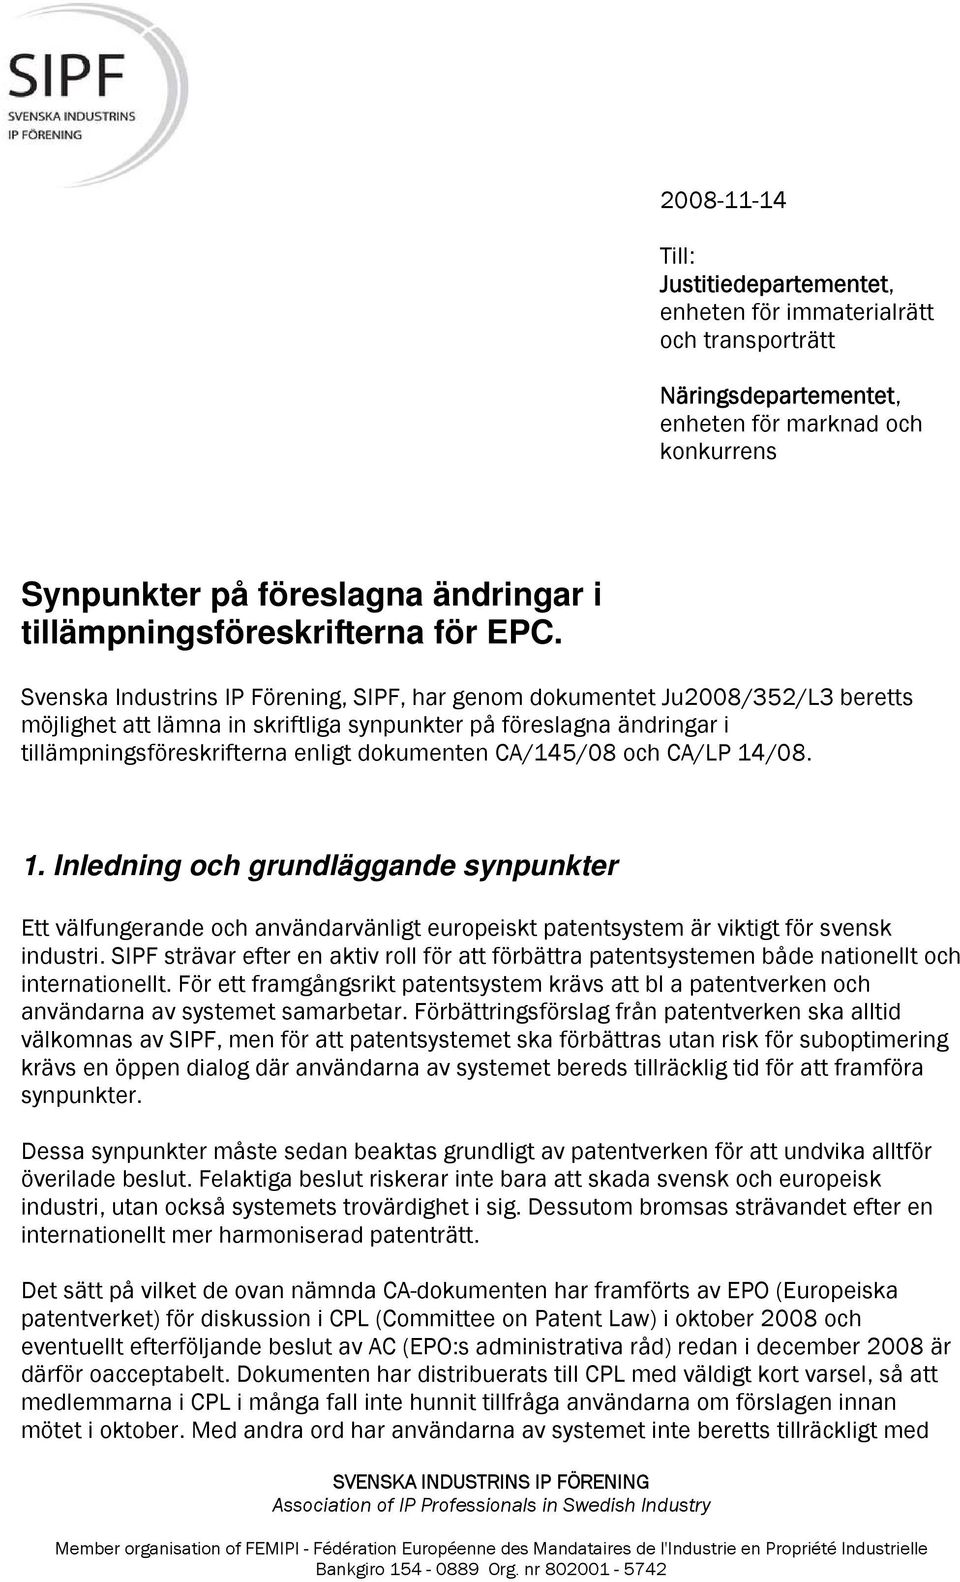 Svenska Industrins IP Förening, SIPF, har genom dokumentet Ju2008/352/L3 beretts möjlighet att lämna in skriftliga synpunkter på föreslagna ändringar i tillämpningsföreskrifterna enligt dokumenten